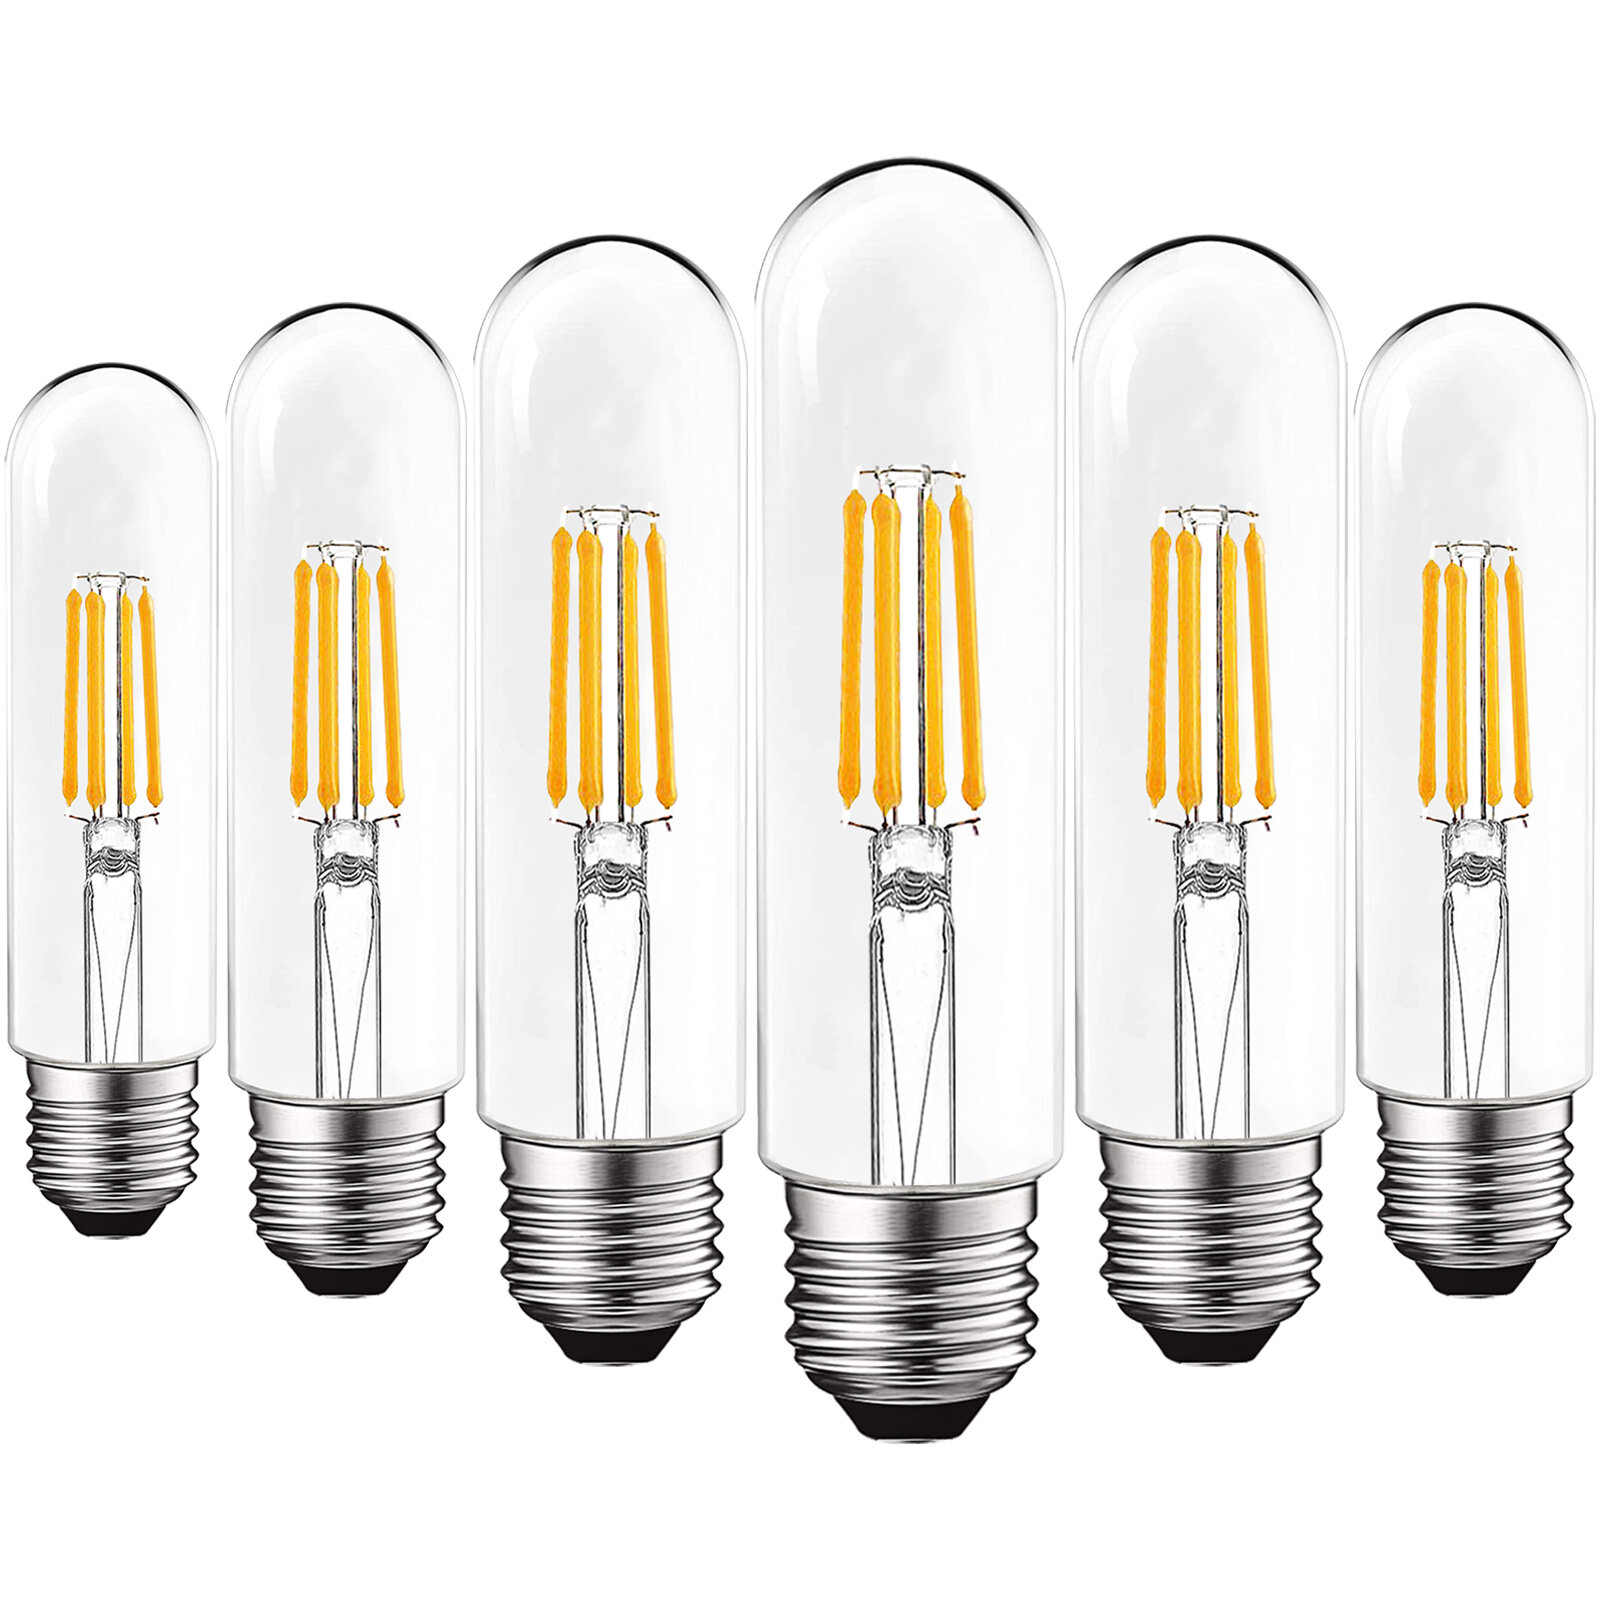 https://assets.wfcdn.com/im/83771304/compr-r85/1578/157805354/5-watt-60-watt-equivalent-t10-led-dimmable-light-bulb-e26medium-standard-base.jpg